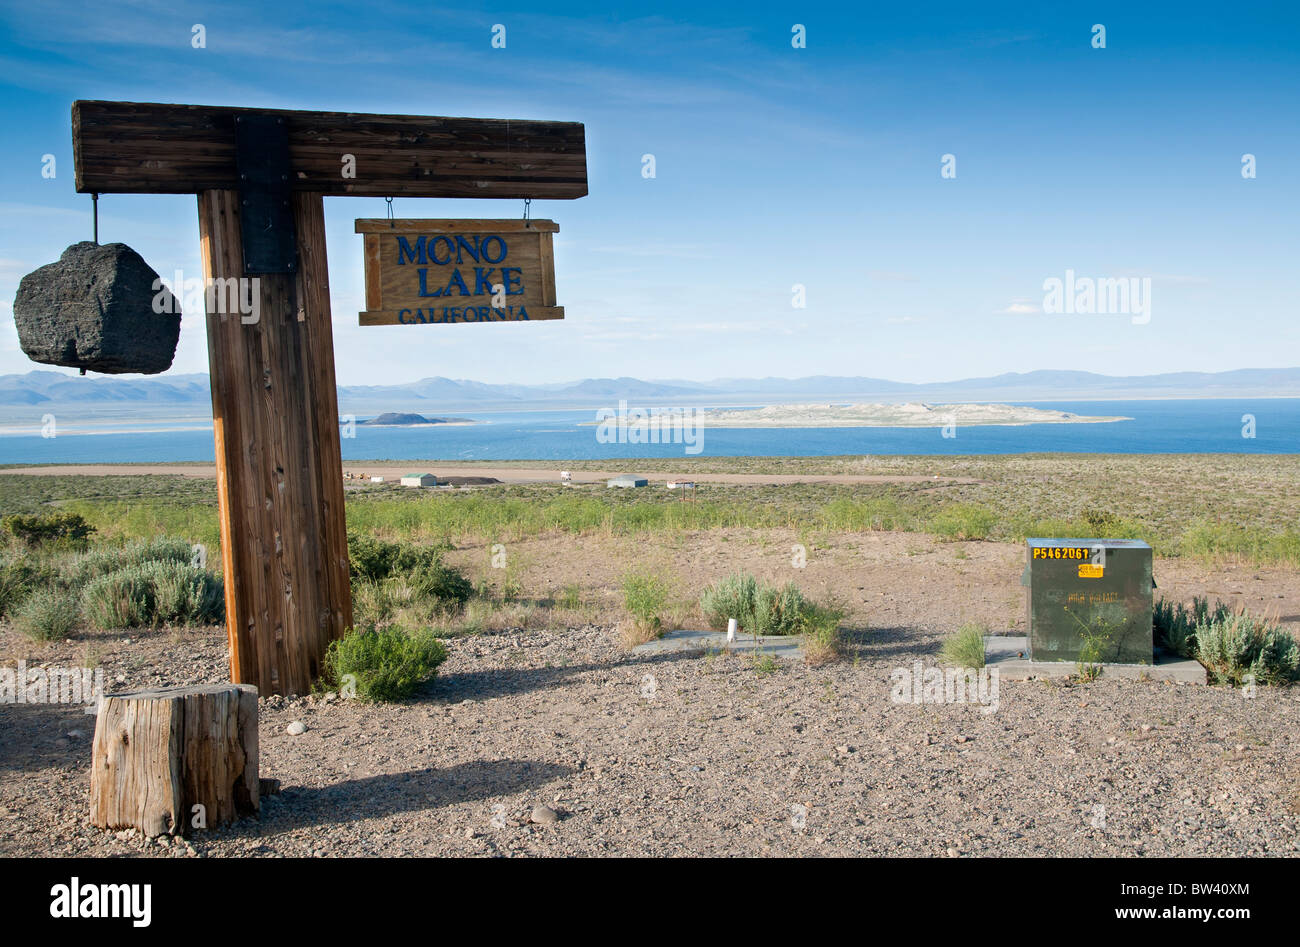 Mono Lake California Stock Photo